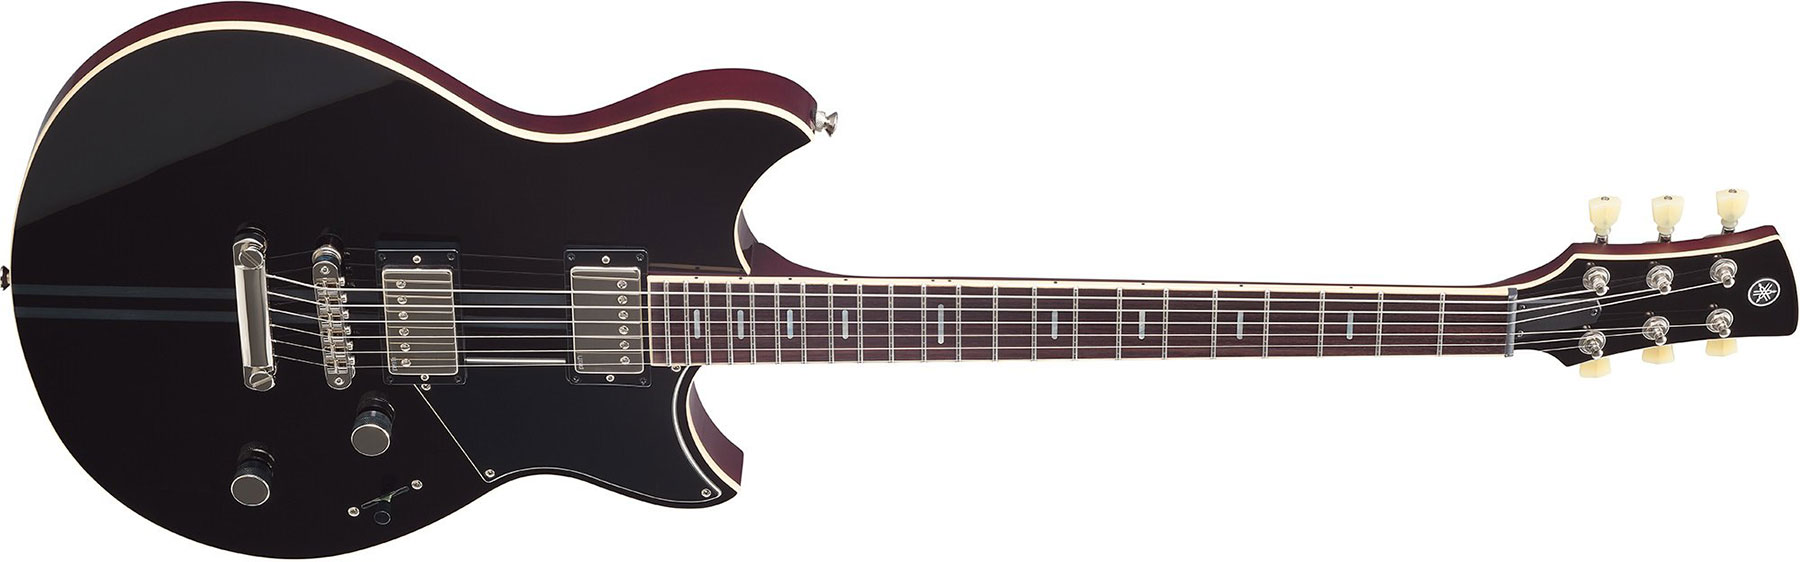 Yamaha Rss20 Revstar Standard Hh Ht Rw - Black - Guitare Électrique Double Cut - Variation 1